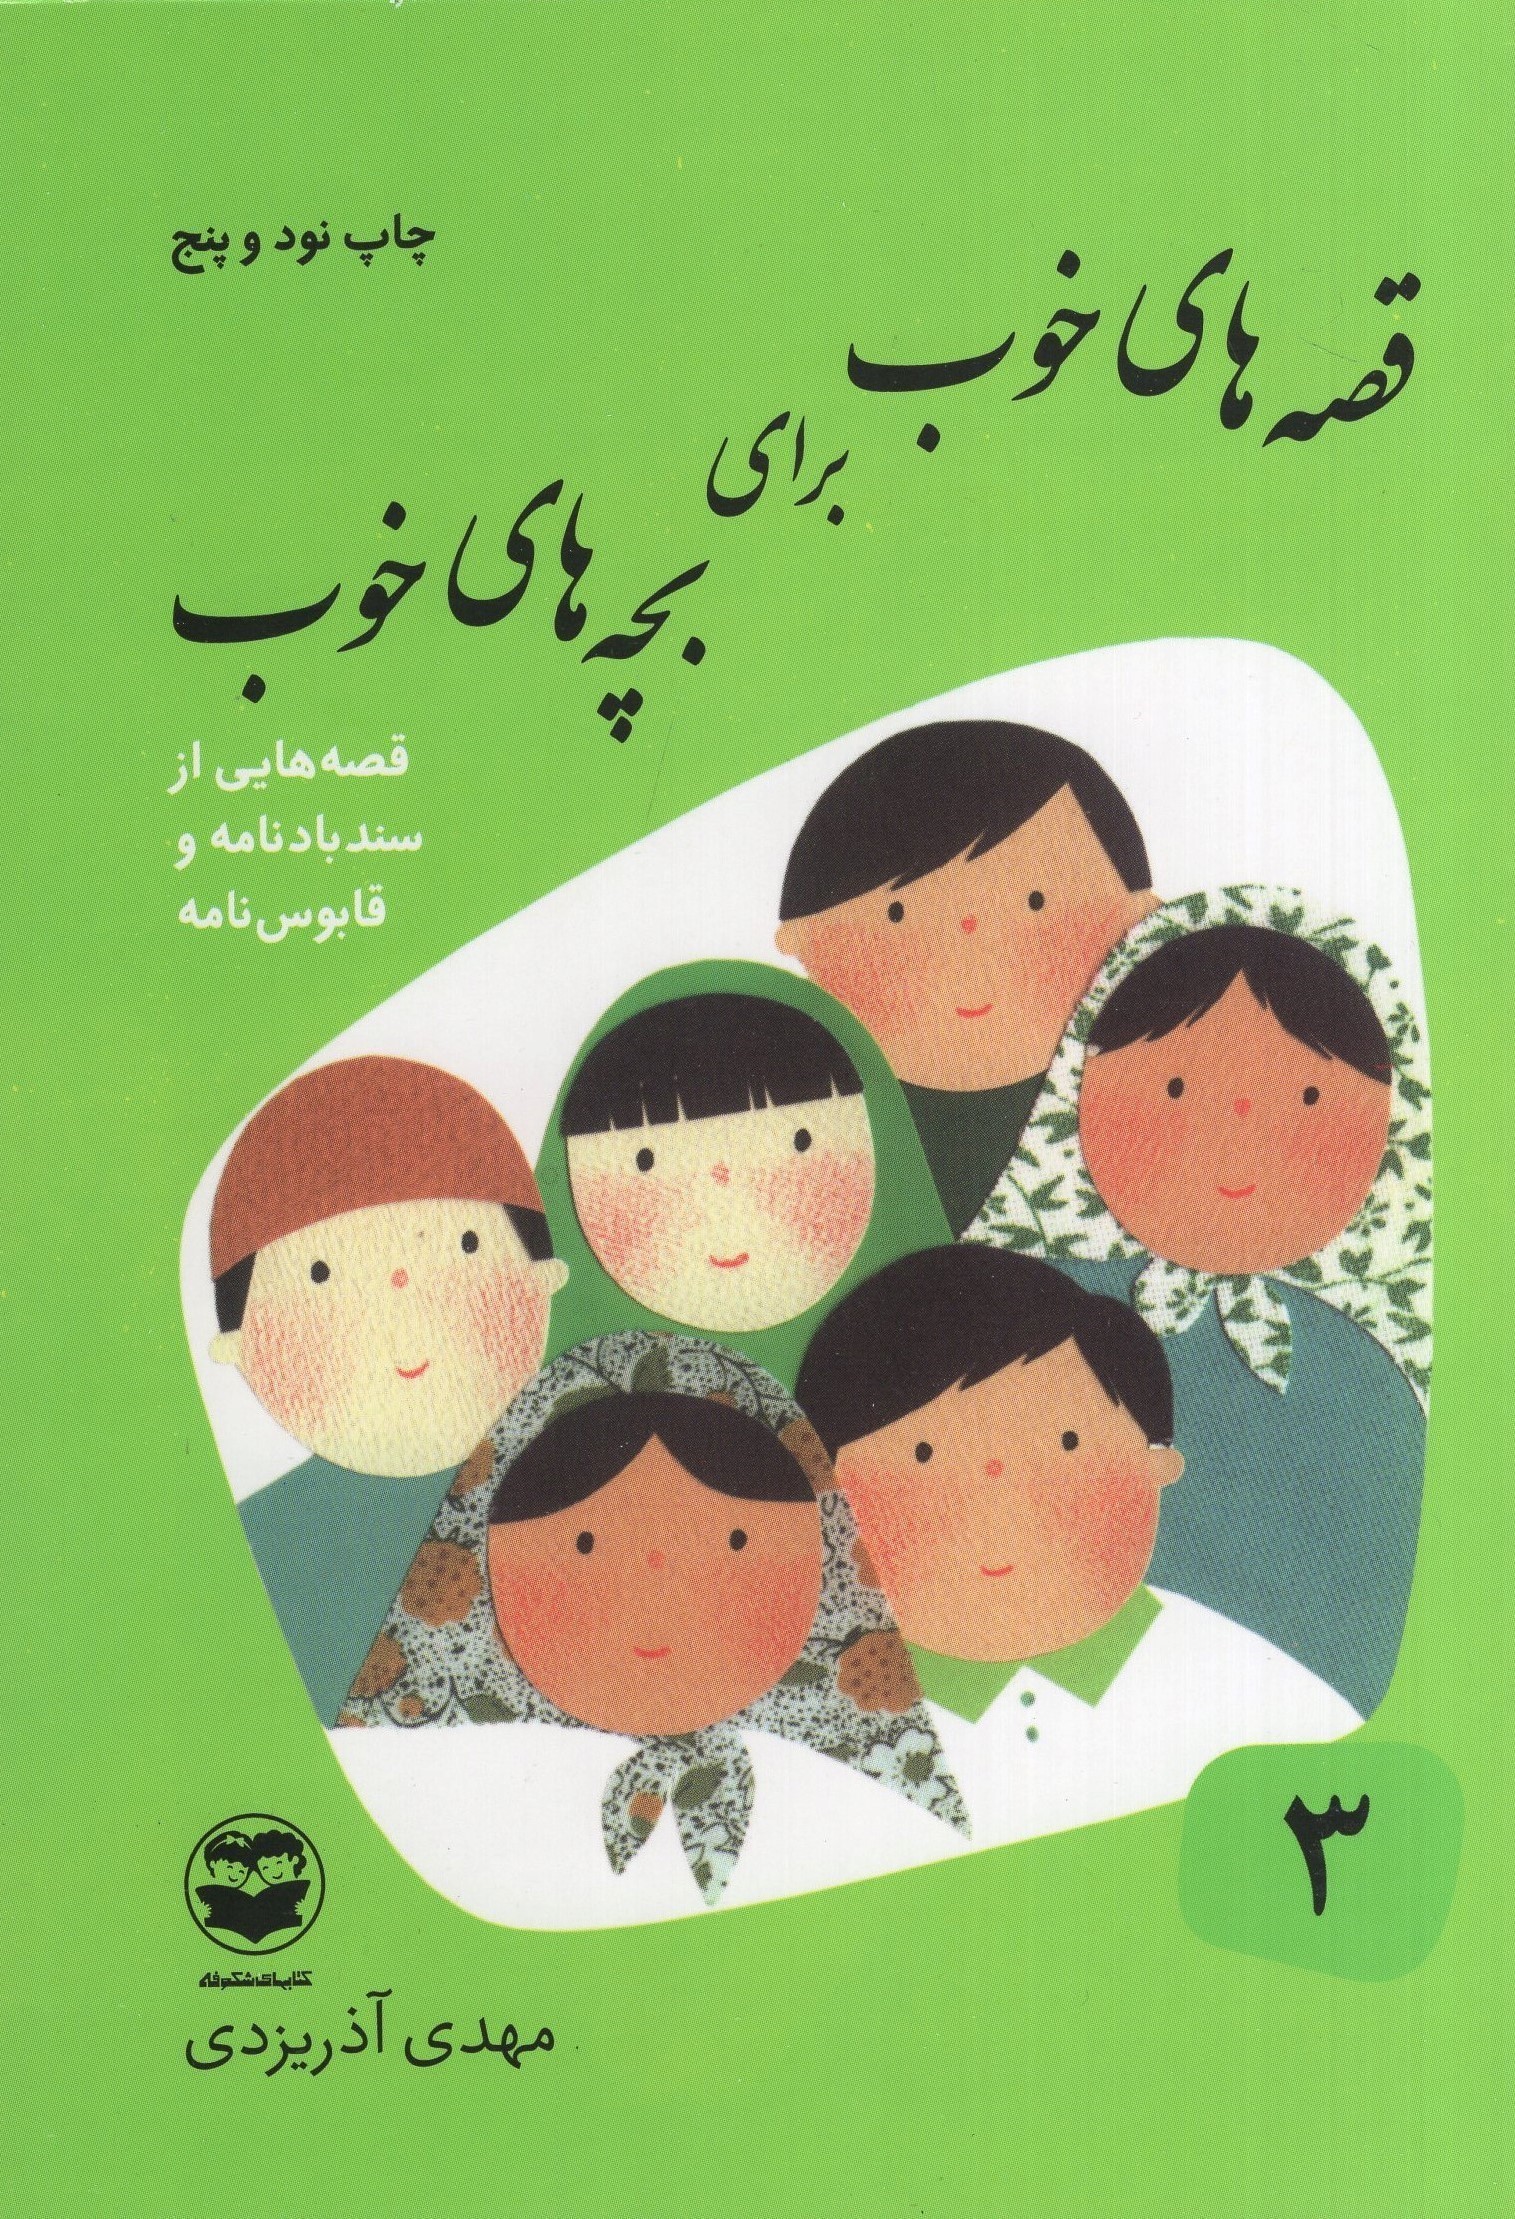 قصه های خوب برای بچه های خوب 3 قصه هایی از سندبادنامه و قابوس نامه(امیرکبیر)